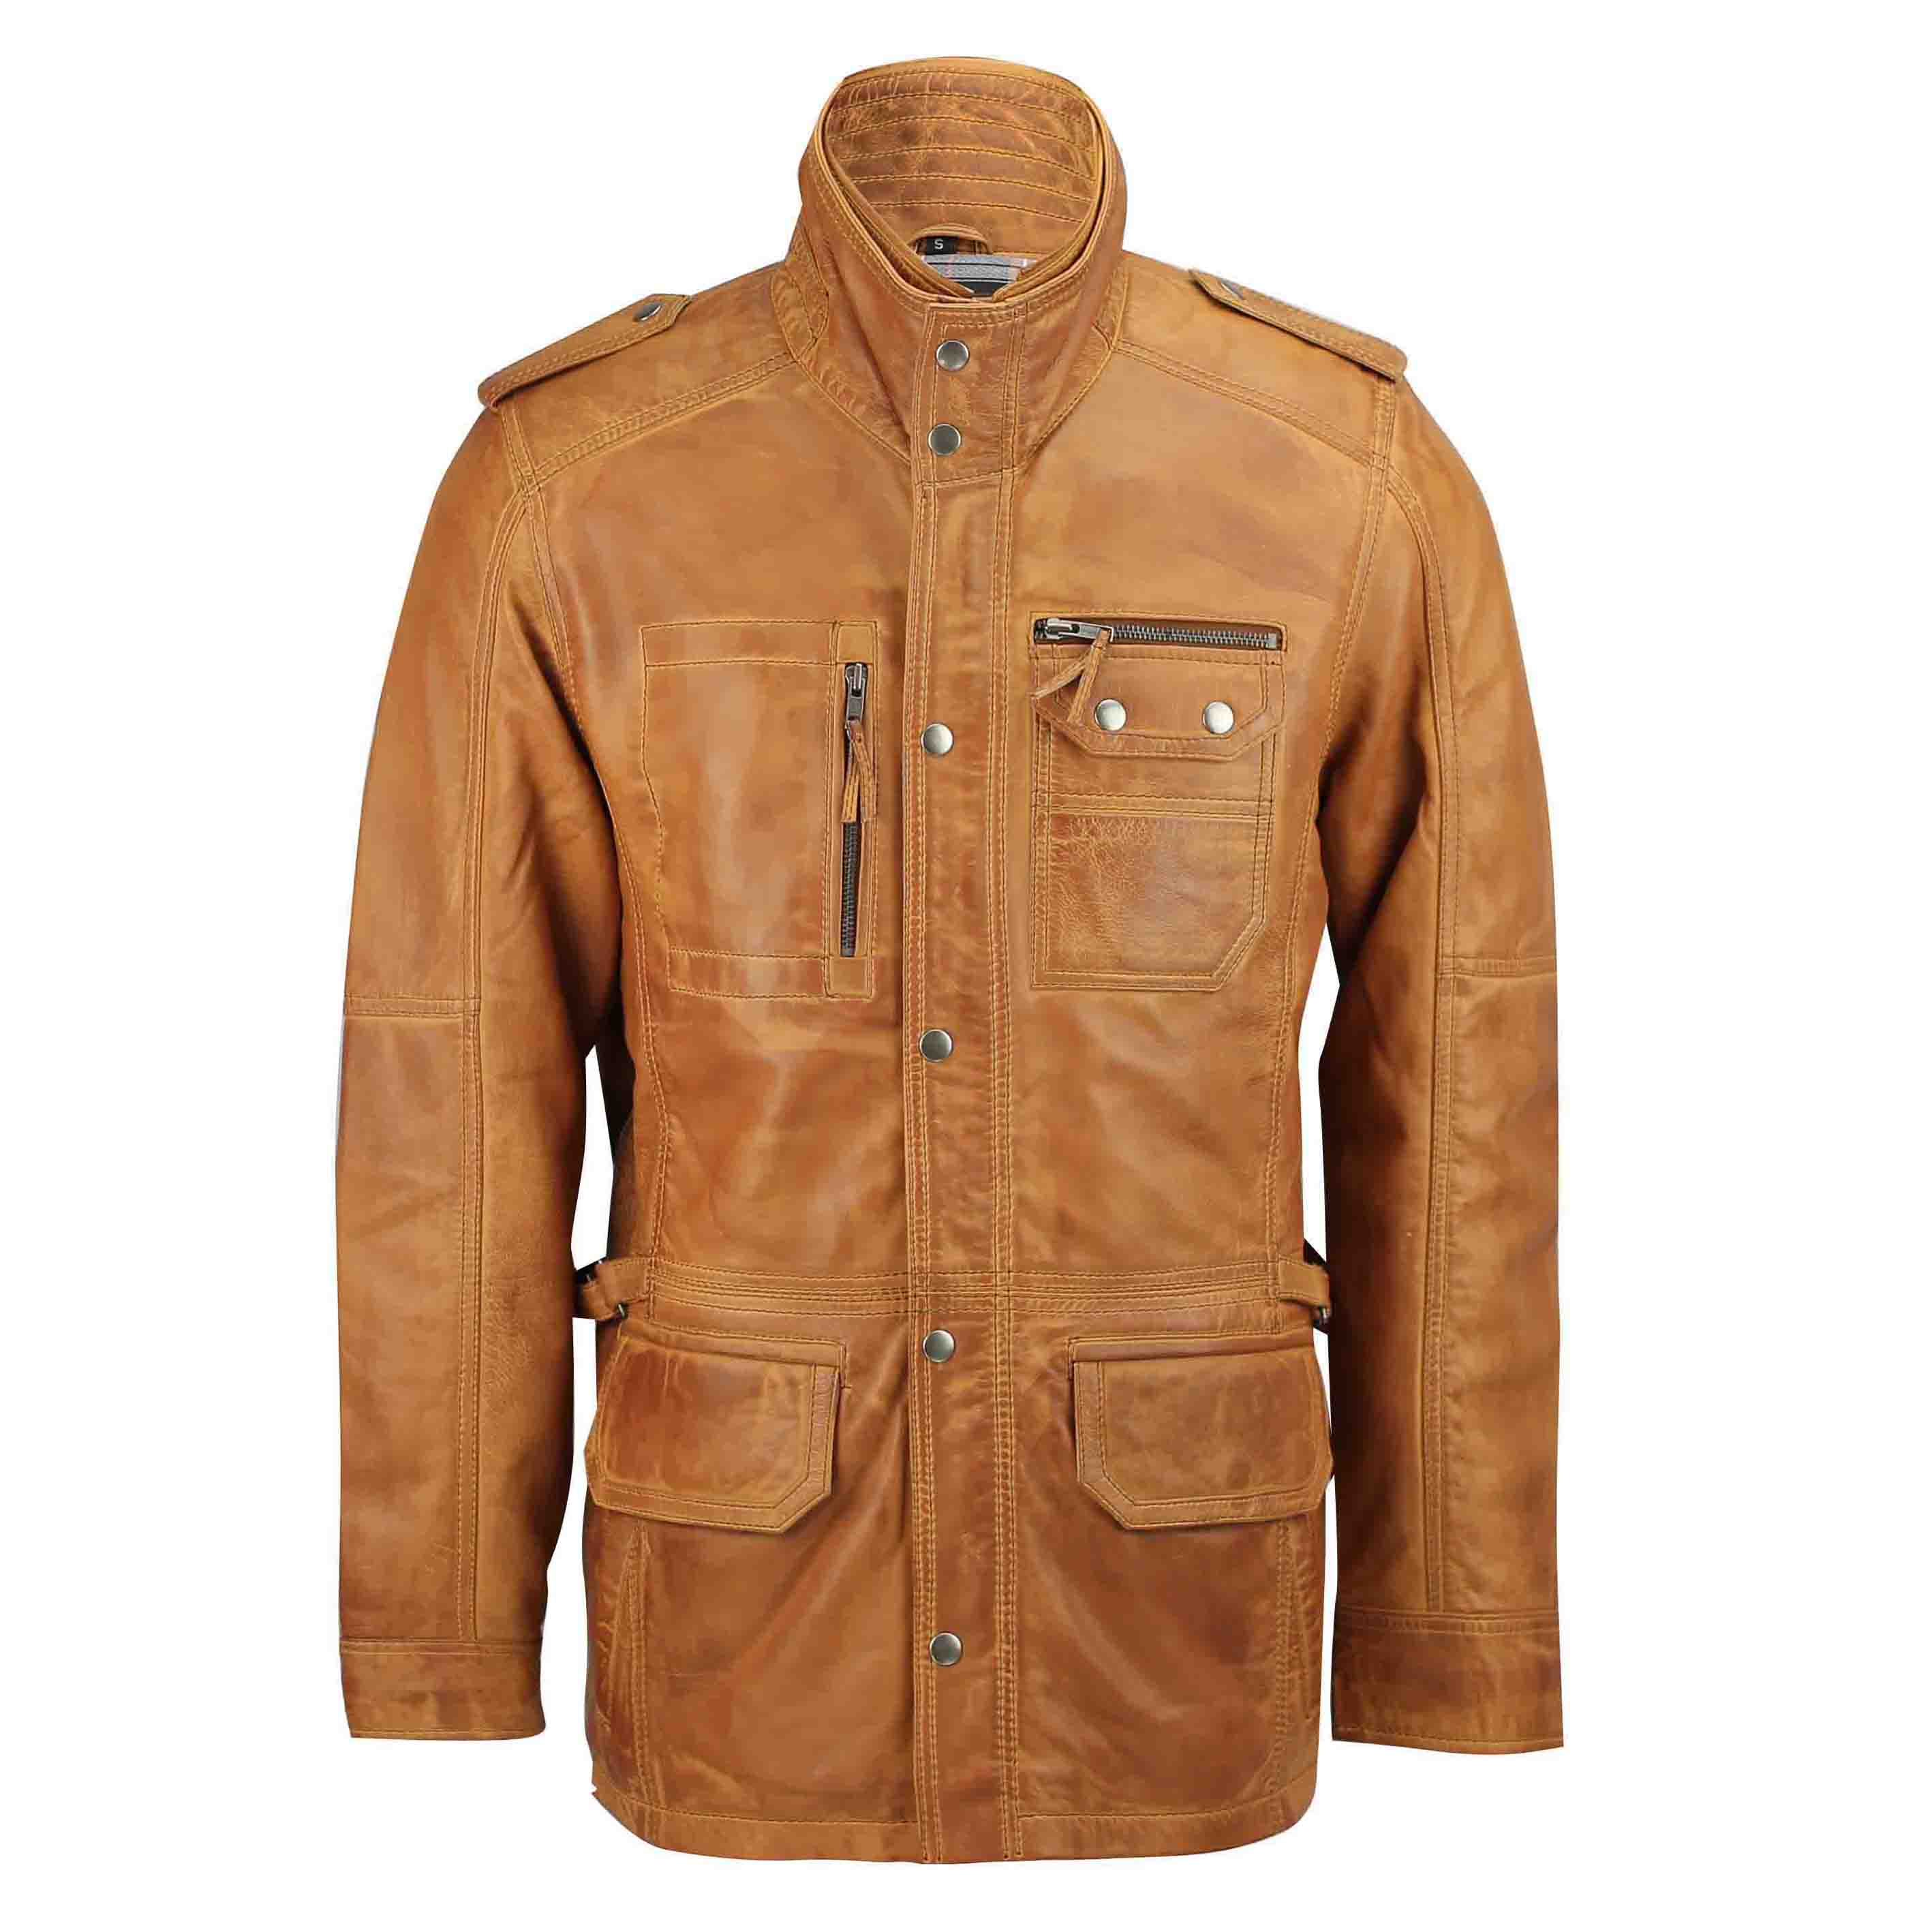 Nouveau homme marron clair en cuir véritable militaire vintage manteau smart casual champ veste